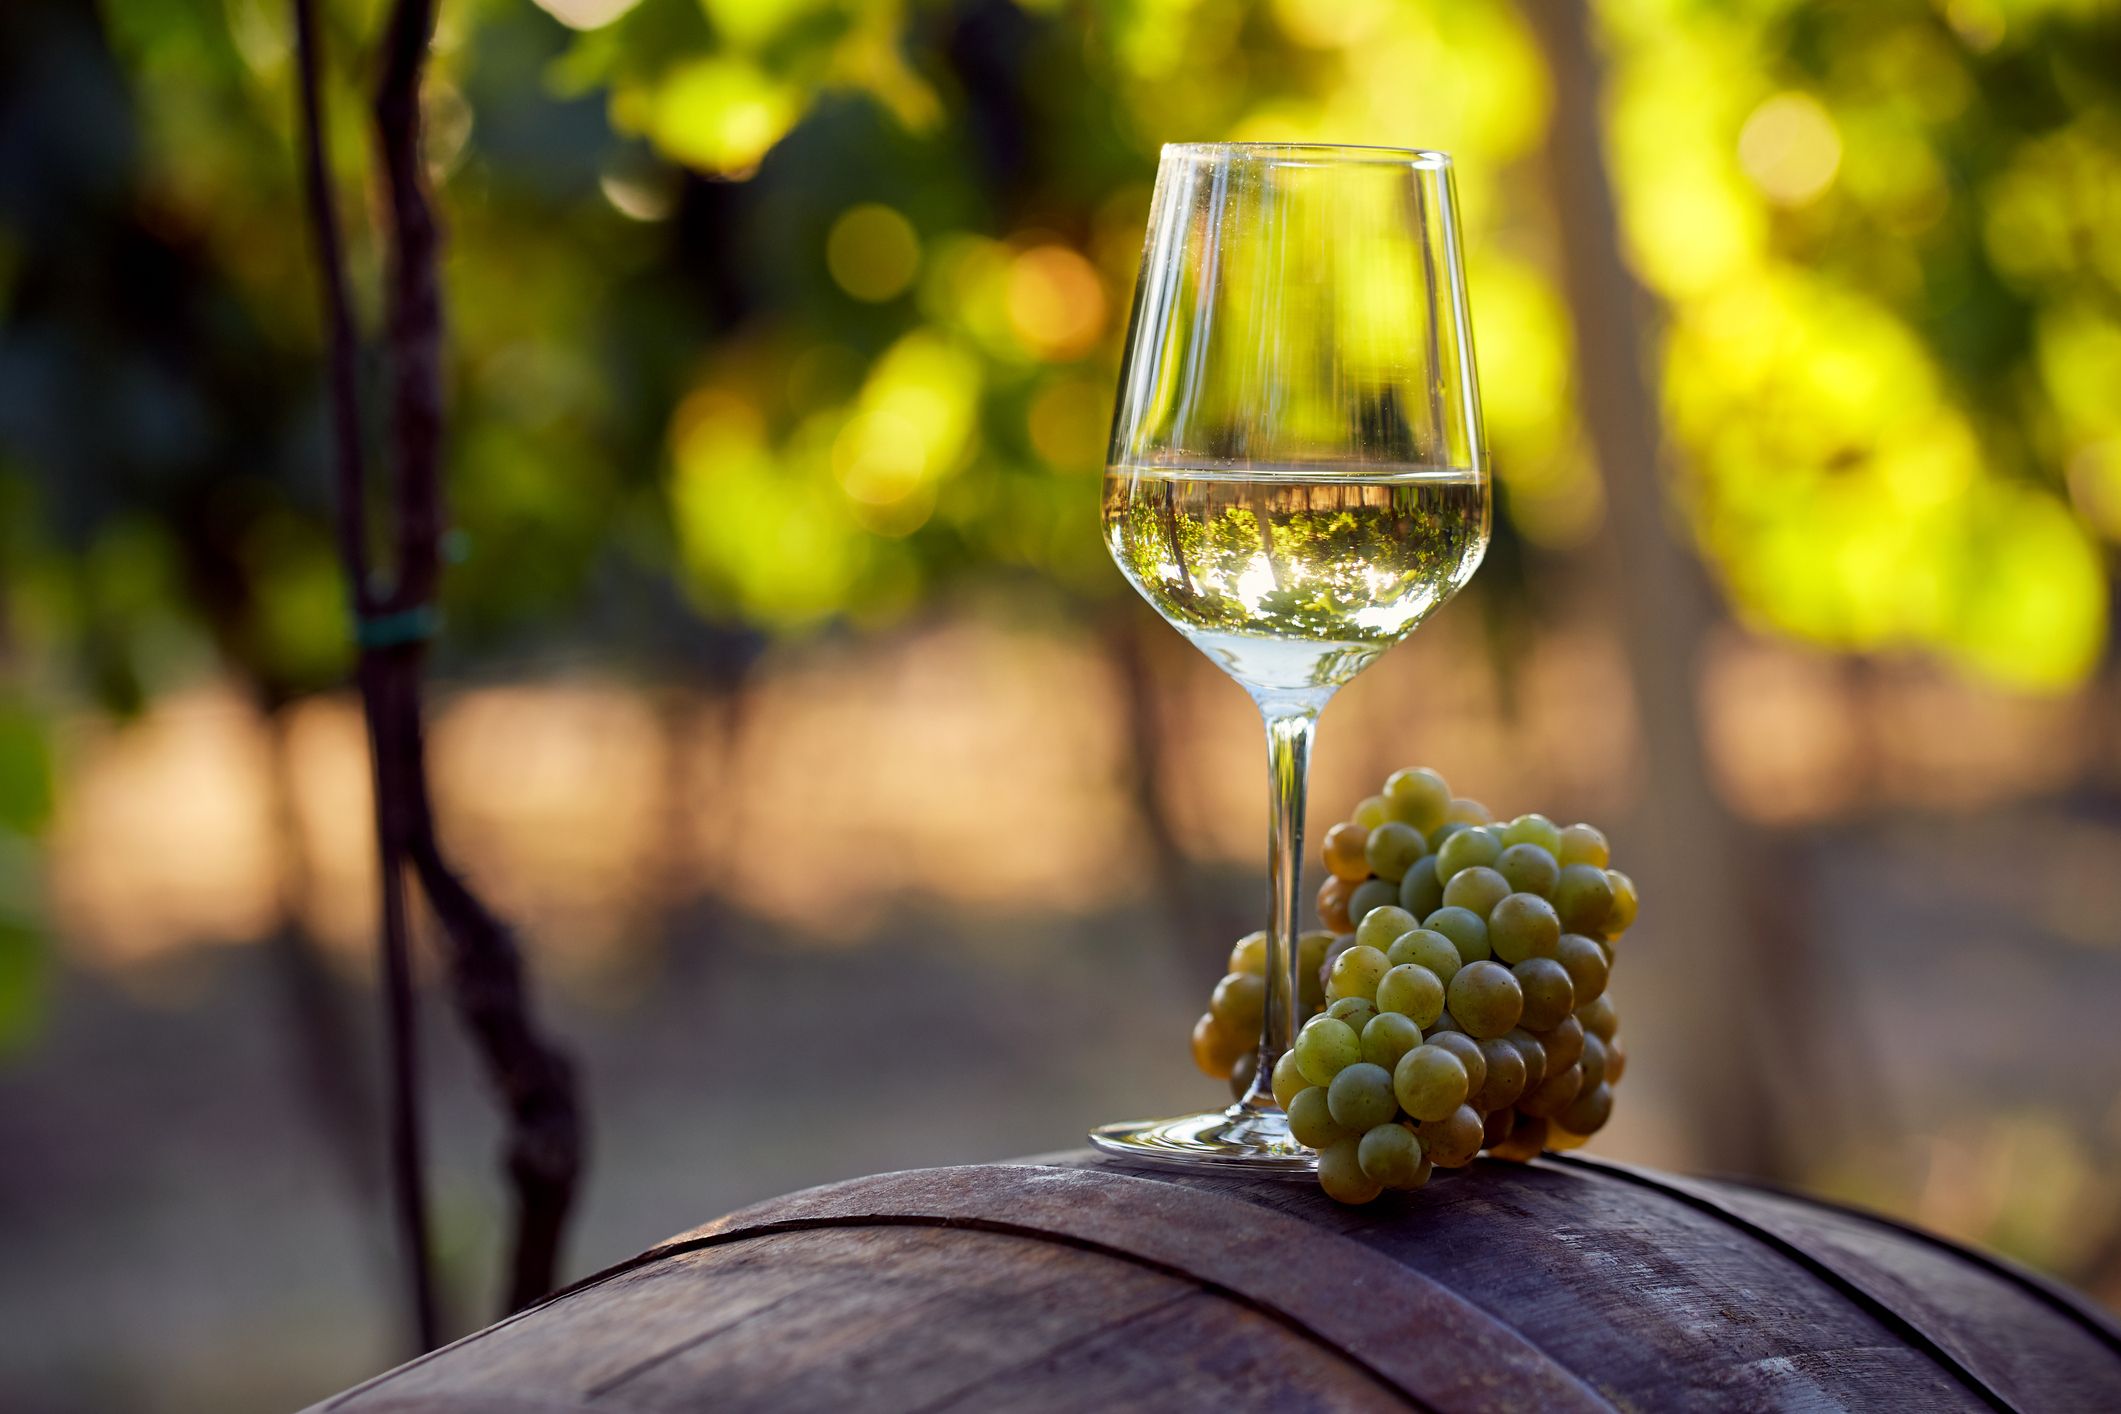 Mặc dù thường kết hợp với nhau, rượu vang tự nhiên không phải lúc nào cũng hữu cơ. Một loại rượu vang